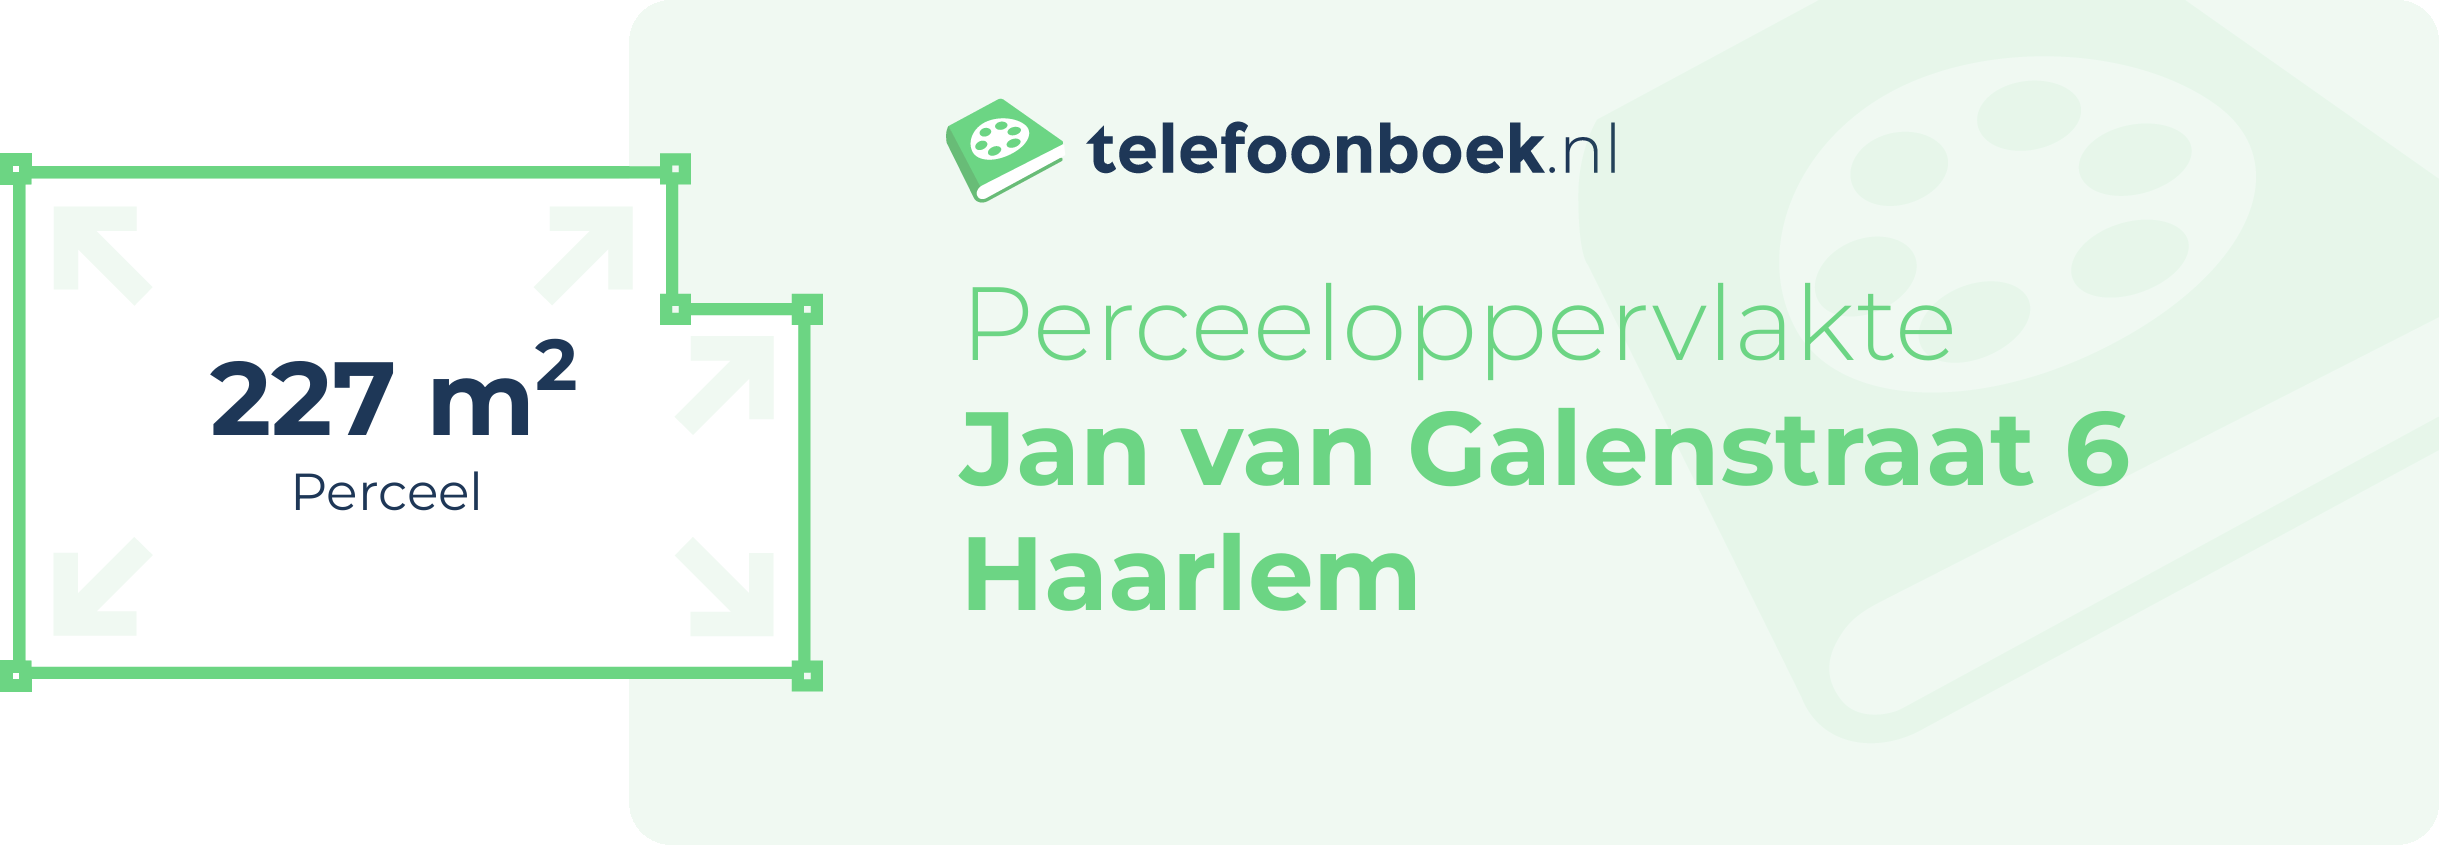 Perceeloppervlakte Jan Van Galenstraat 6 Haarlem